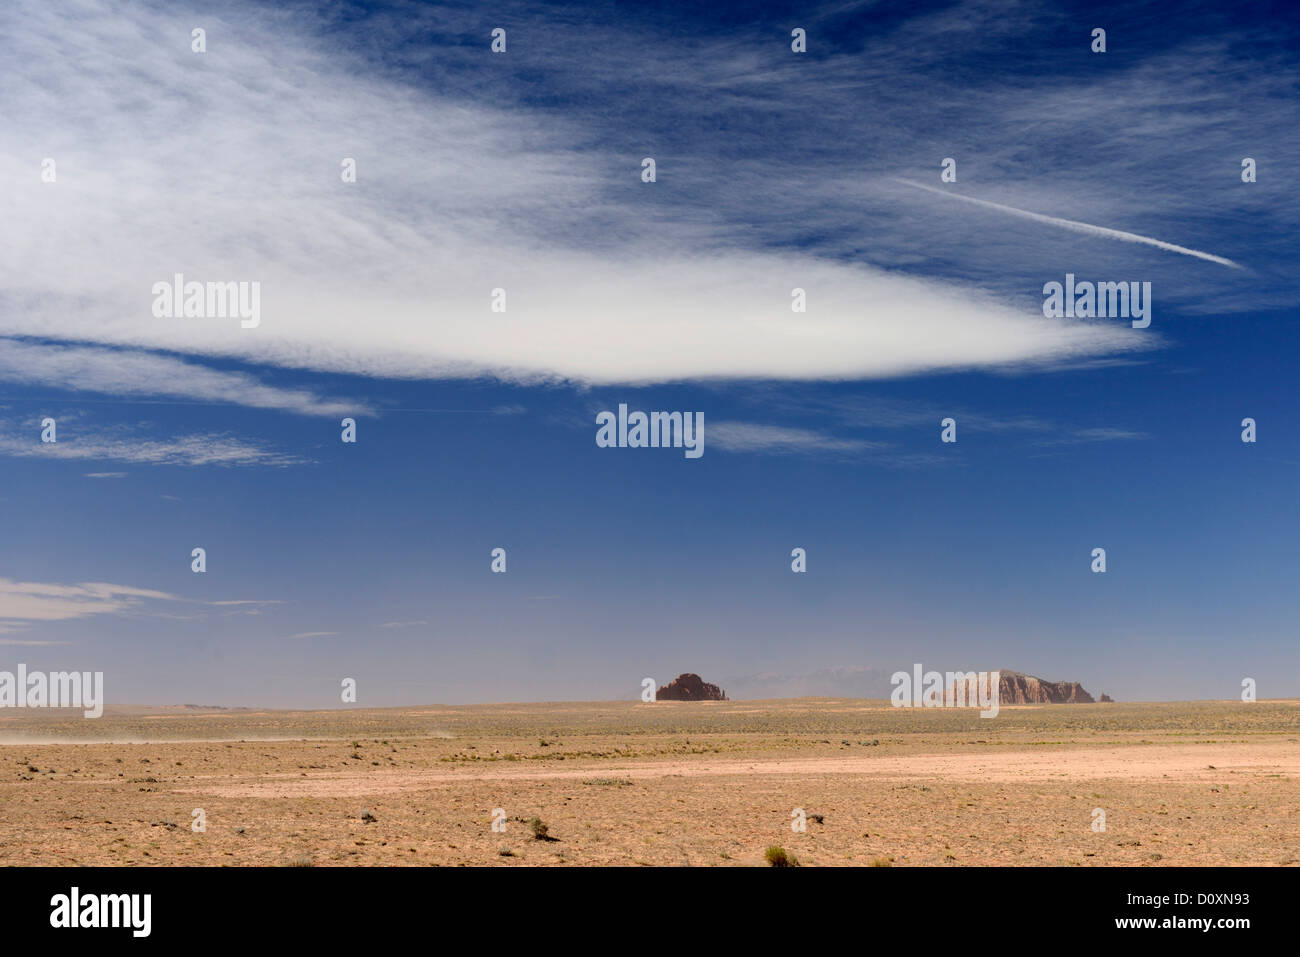 America, Stati Uniti d'America, Stati Uniti, Colorado Plateau, Utah, sabbia del deserto, San Rafael, secco, paesaggio Foto Stock